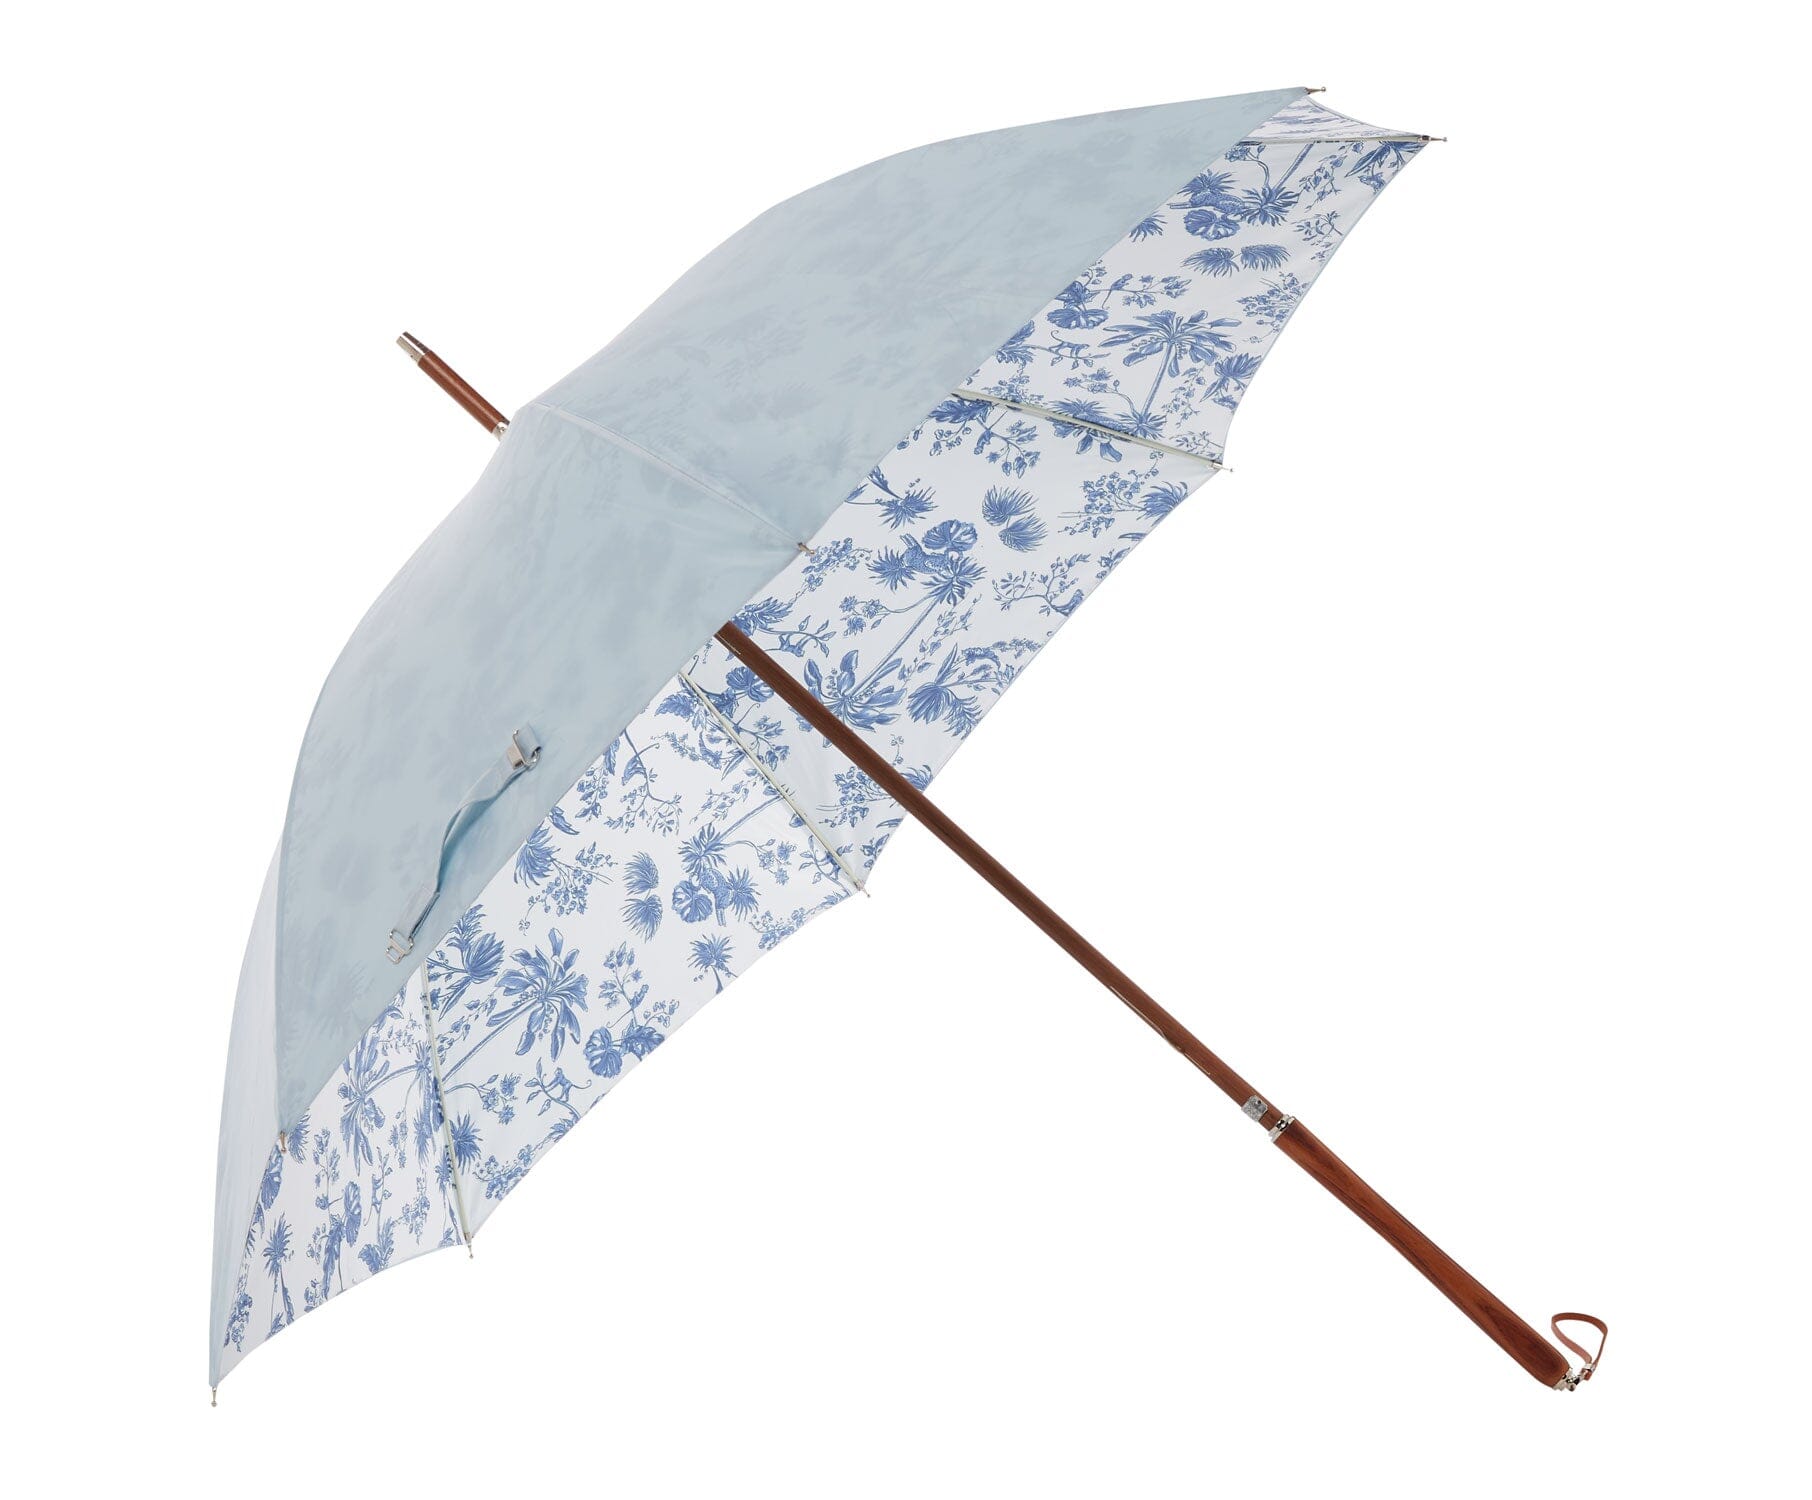 The Rain Umbrella - Blue Chinoiserie Rain Umbrella Business & Pleasure Co 